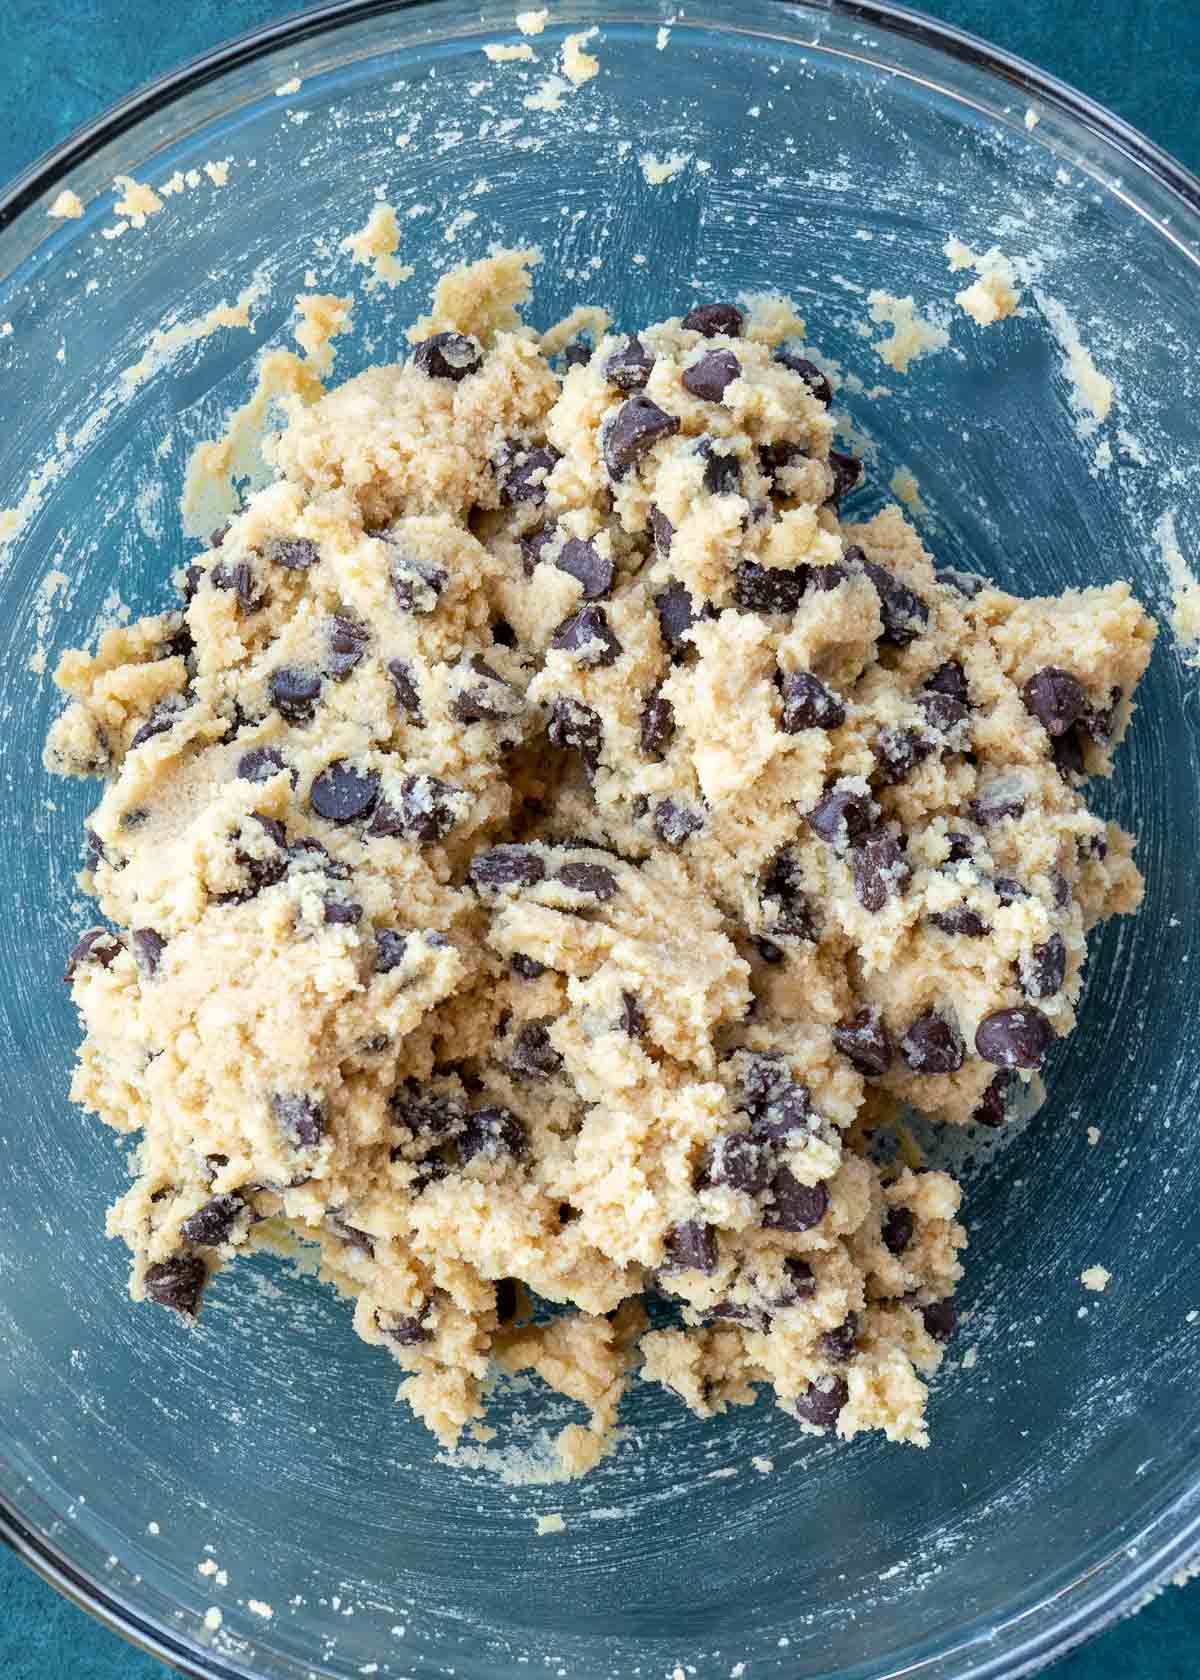 prepared cookie dough